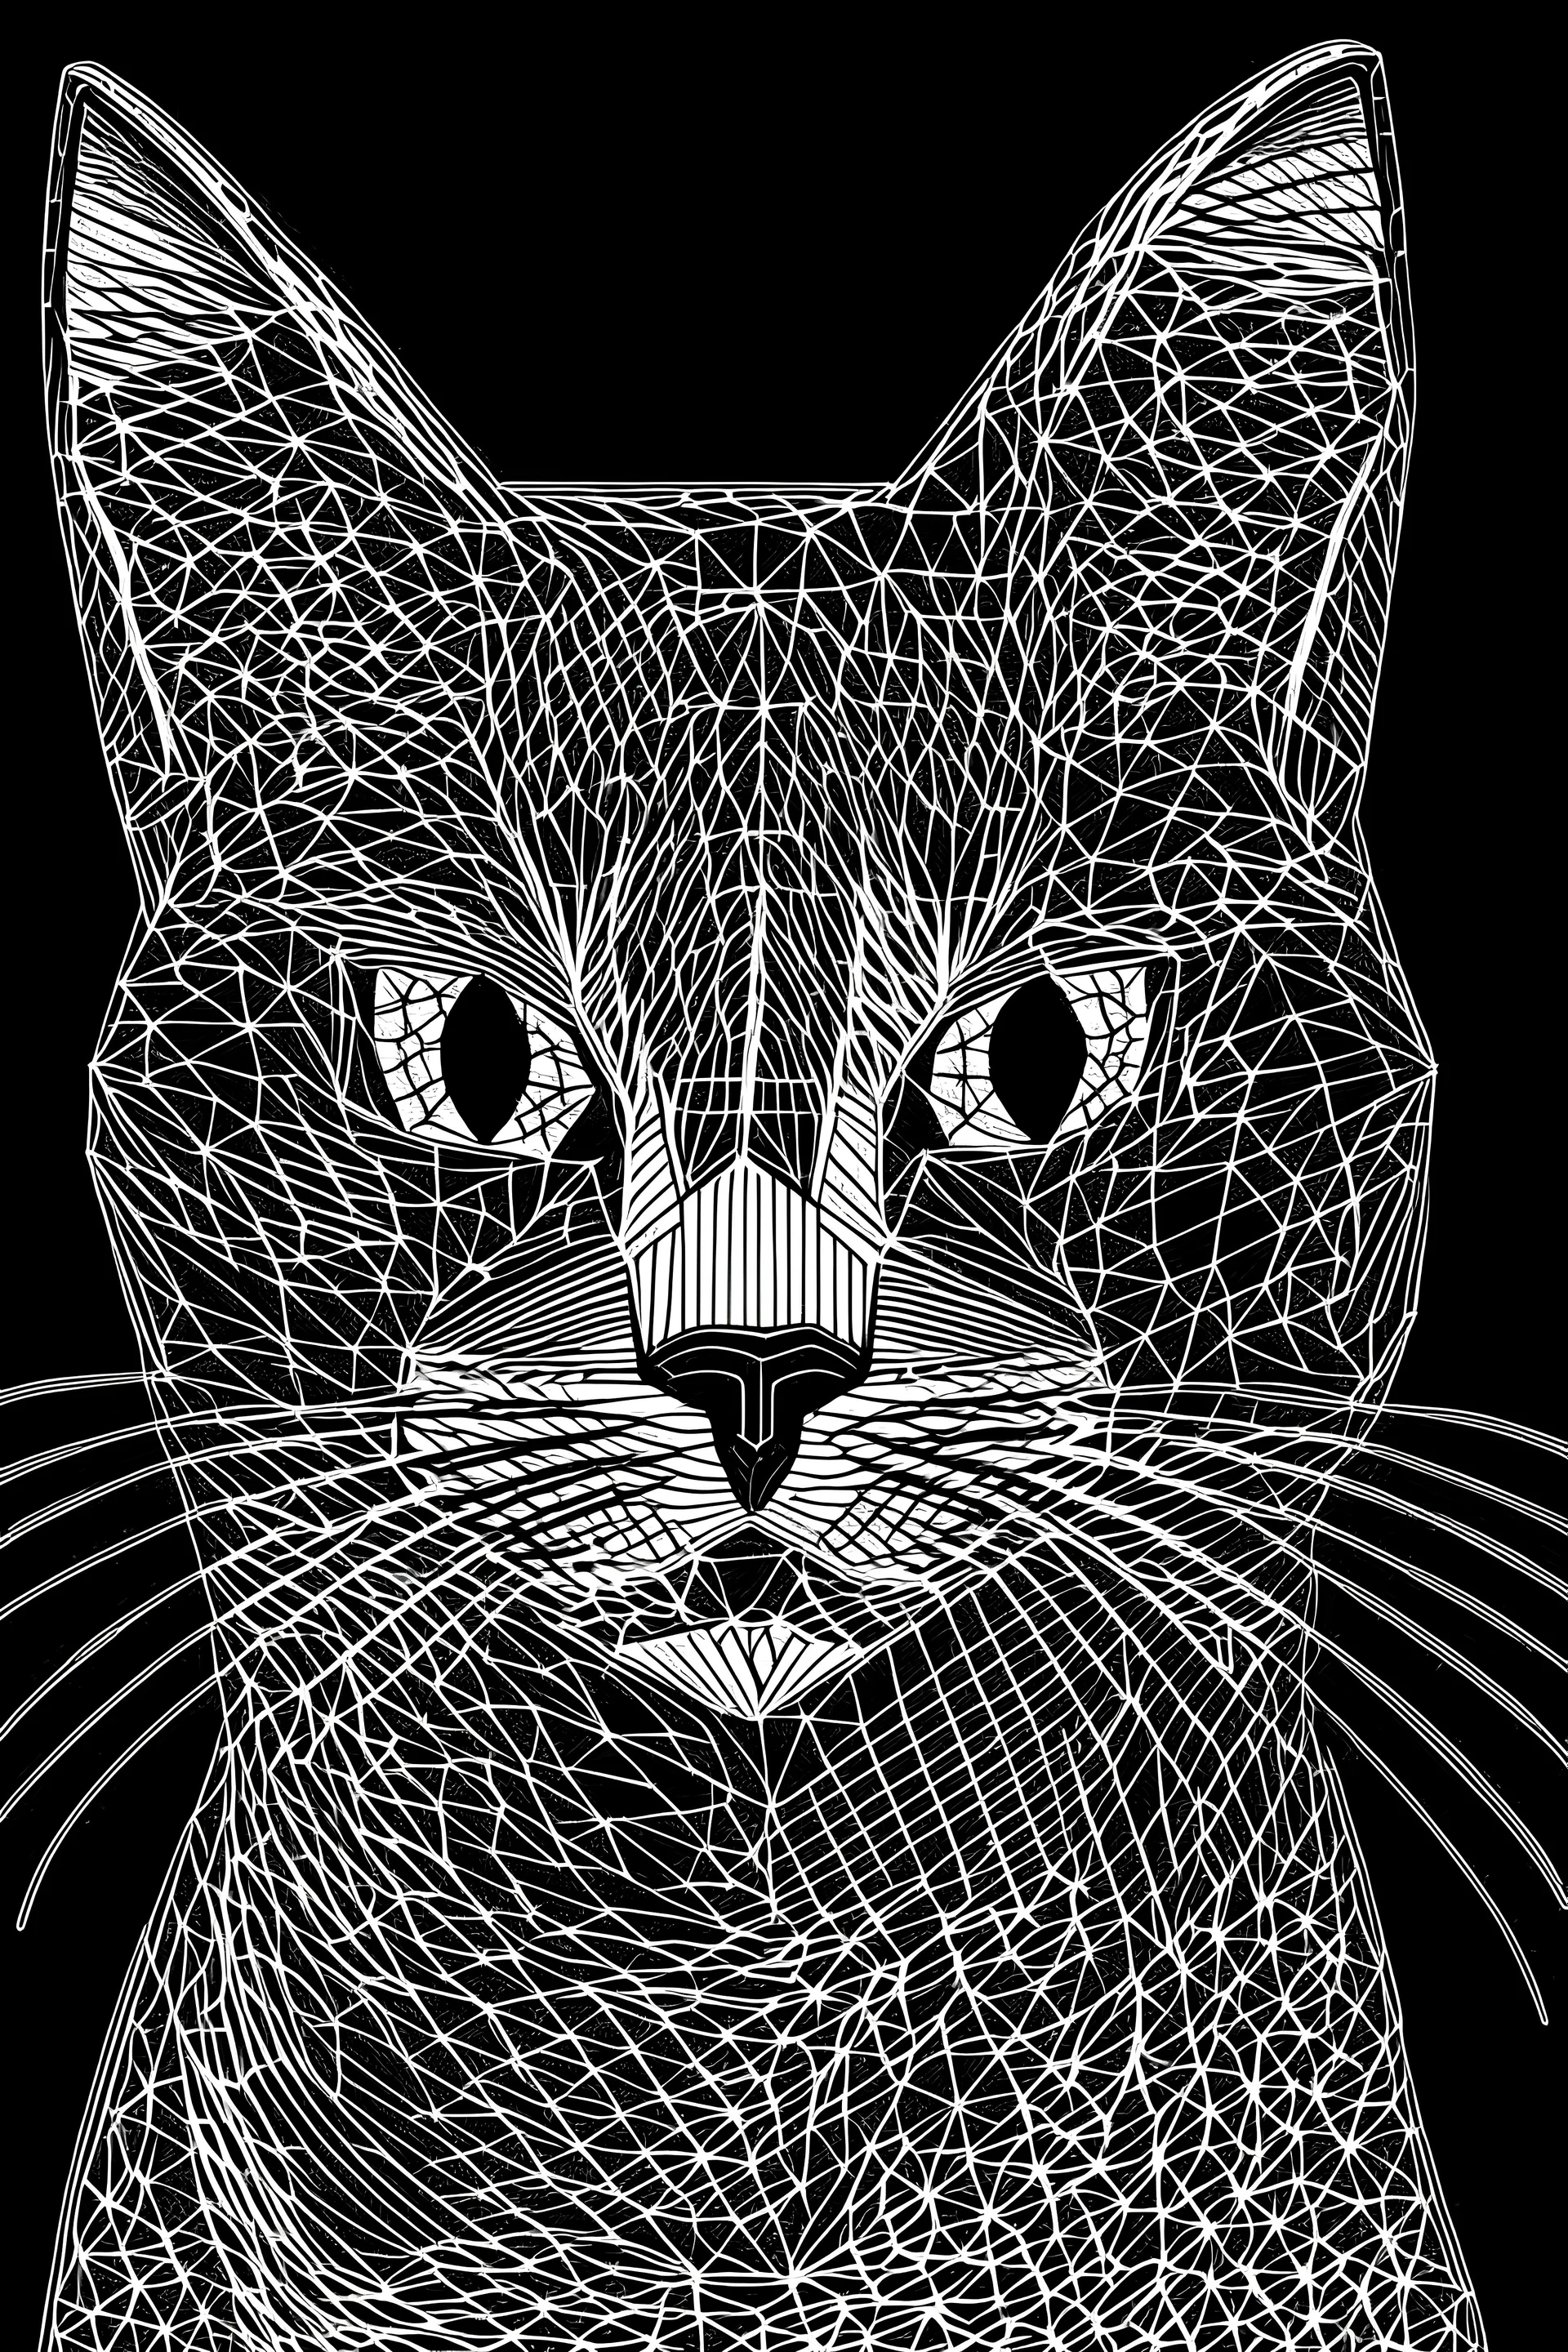 sadece çizgilerden oluşan bir kedi resmi. resim defteri için kalın çizgili olsun